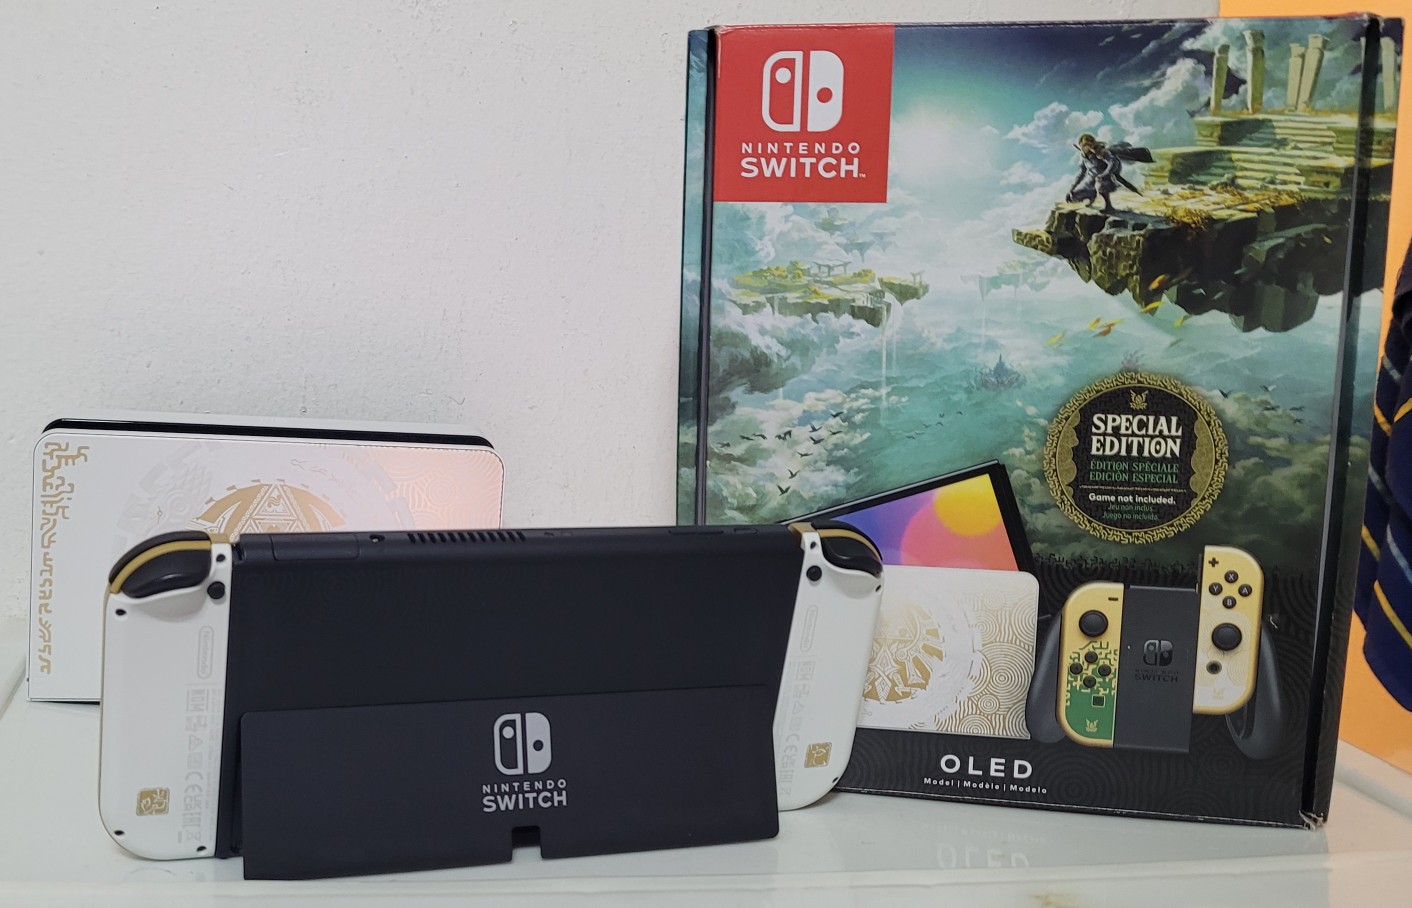 consolas y videojuegos - Nintendo Switch Nuevo Completo en Caja Garantia 1